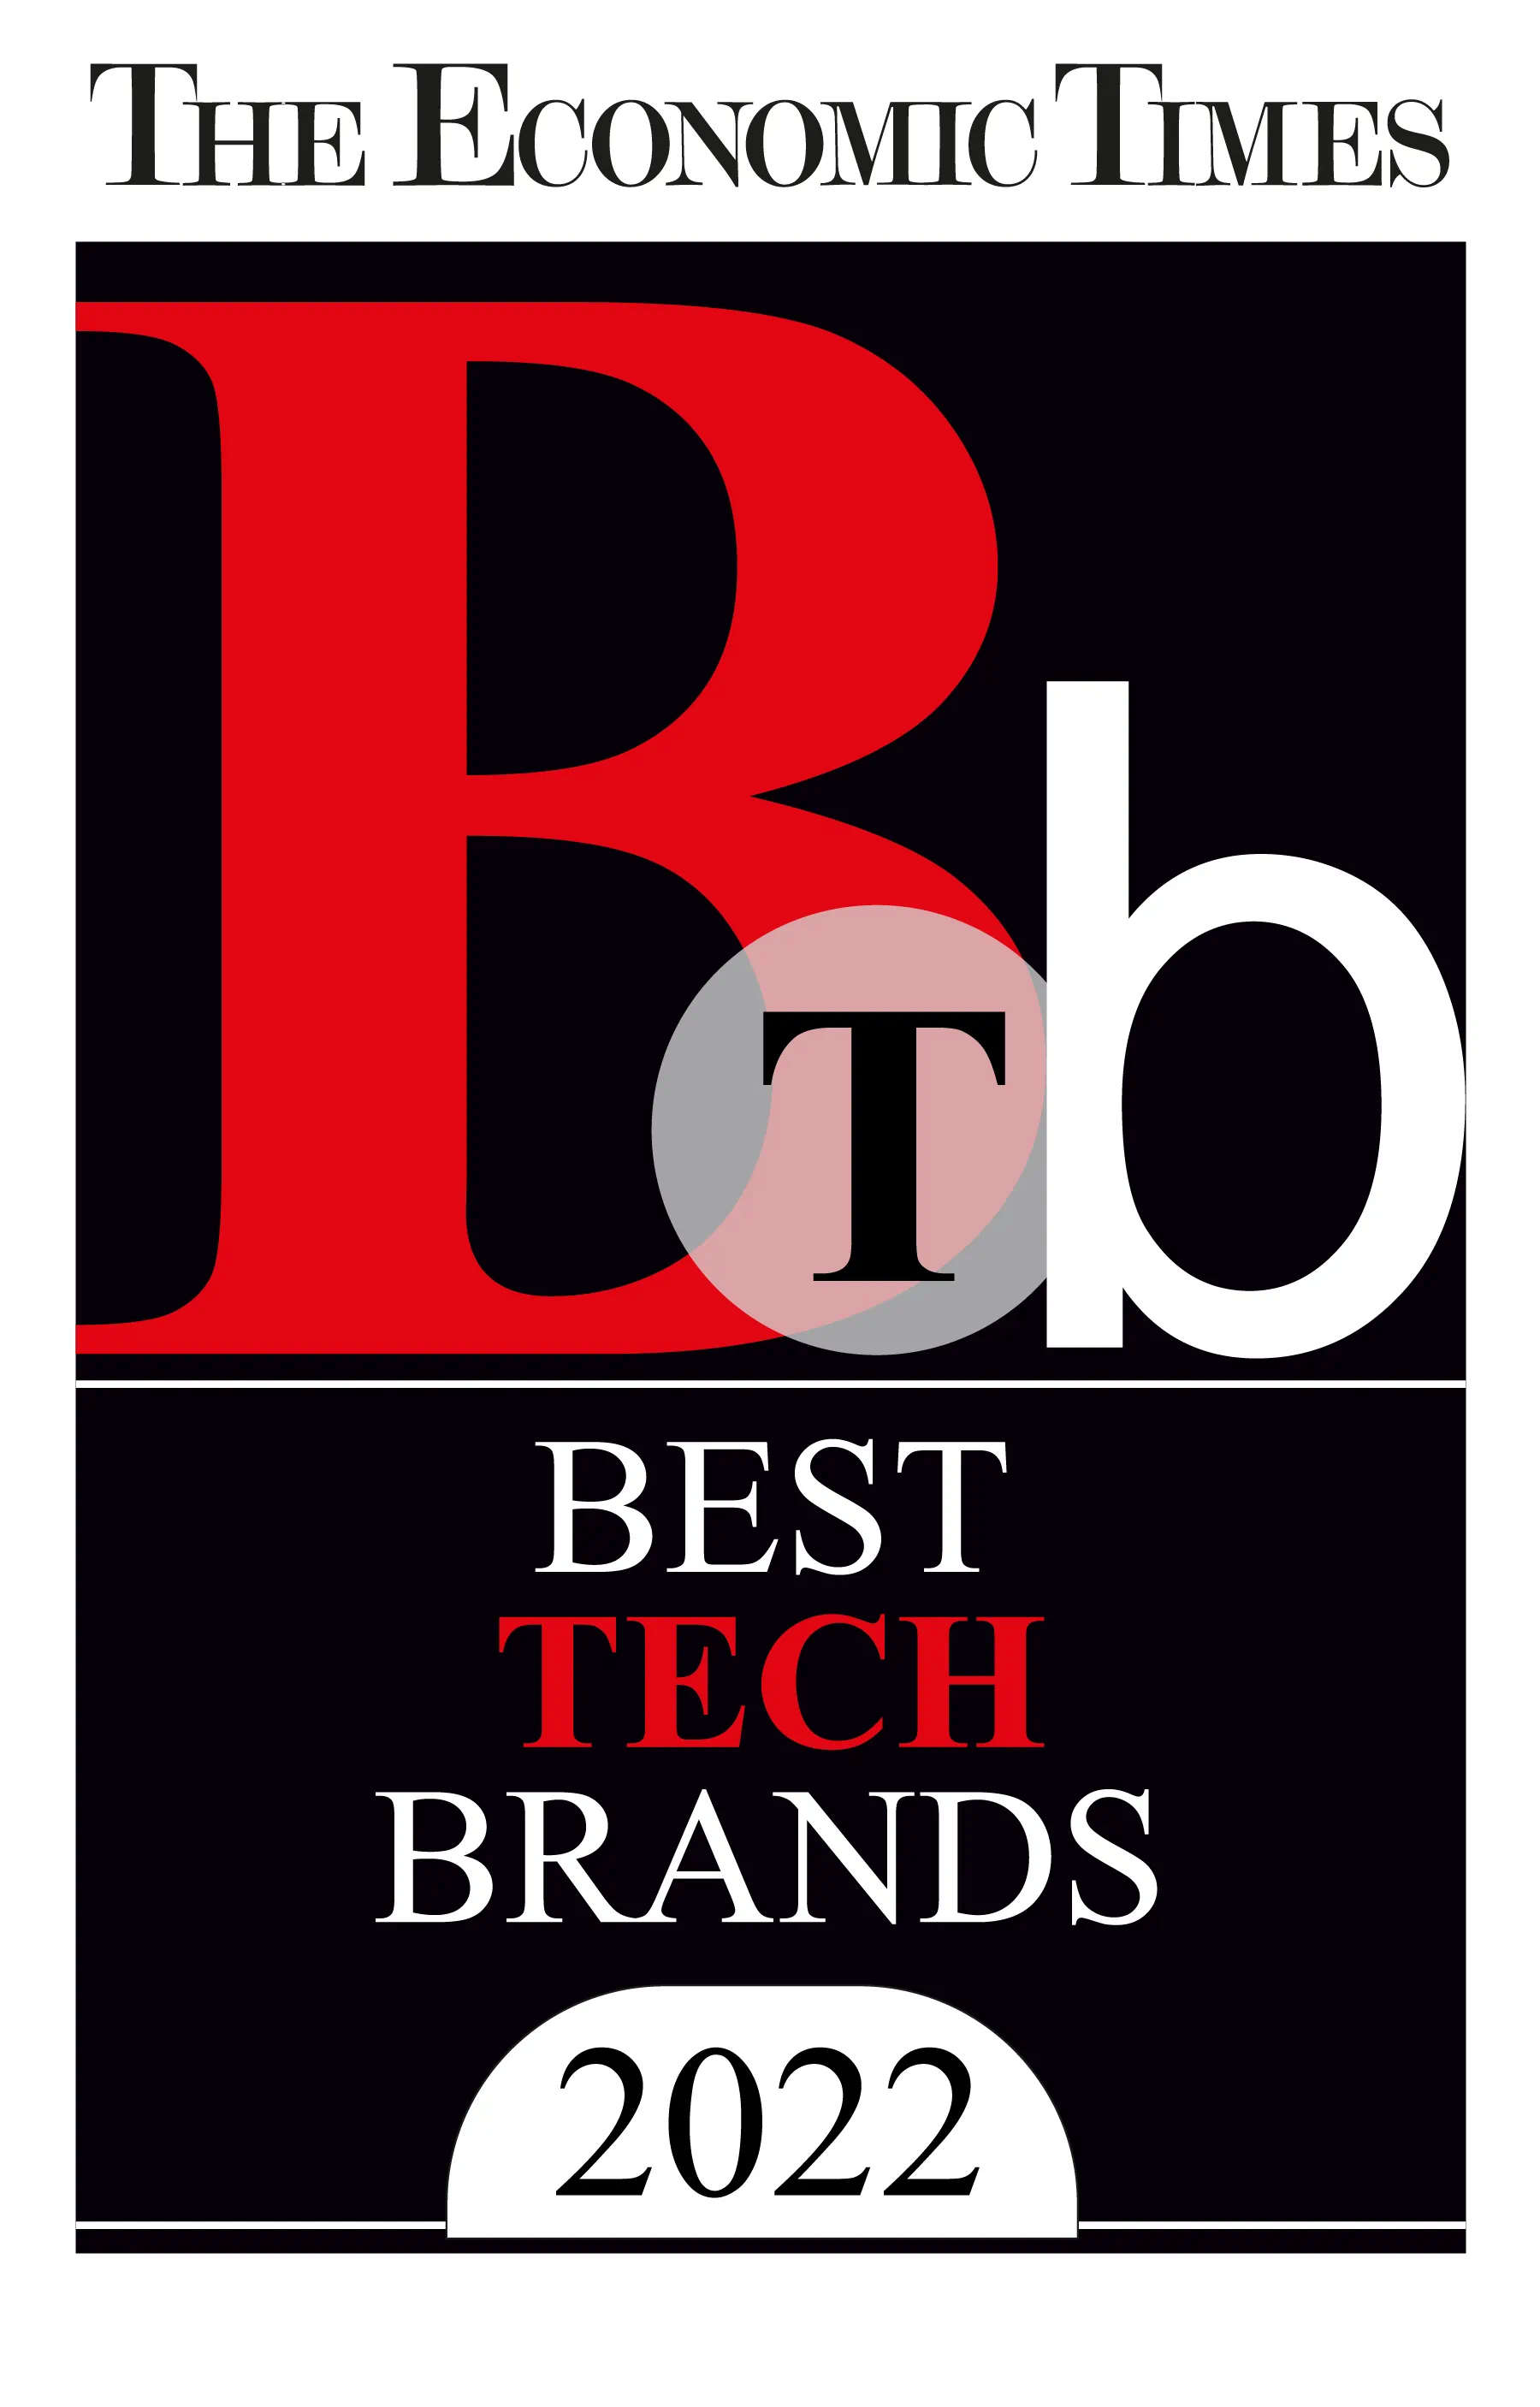 The Economies Times 2022 Best Tech Brands 